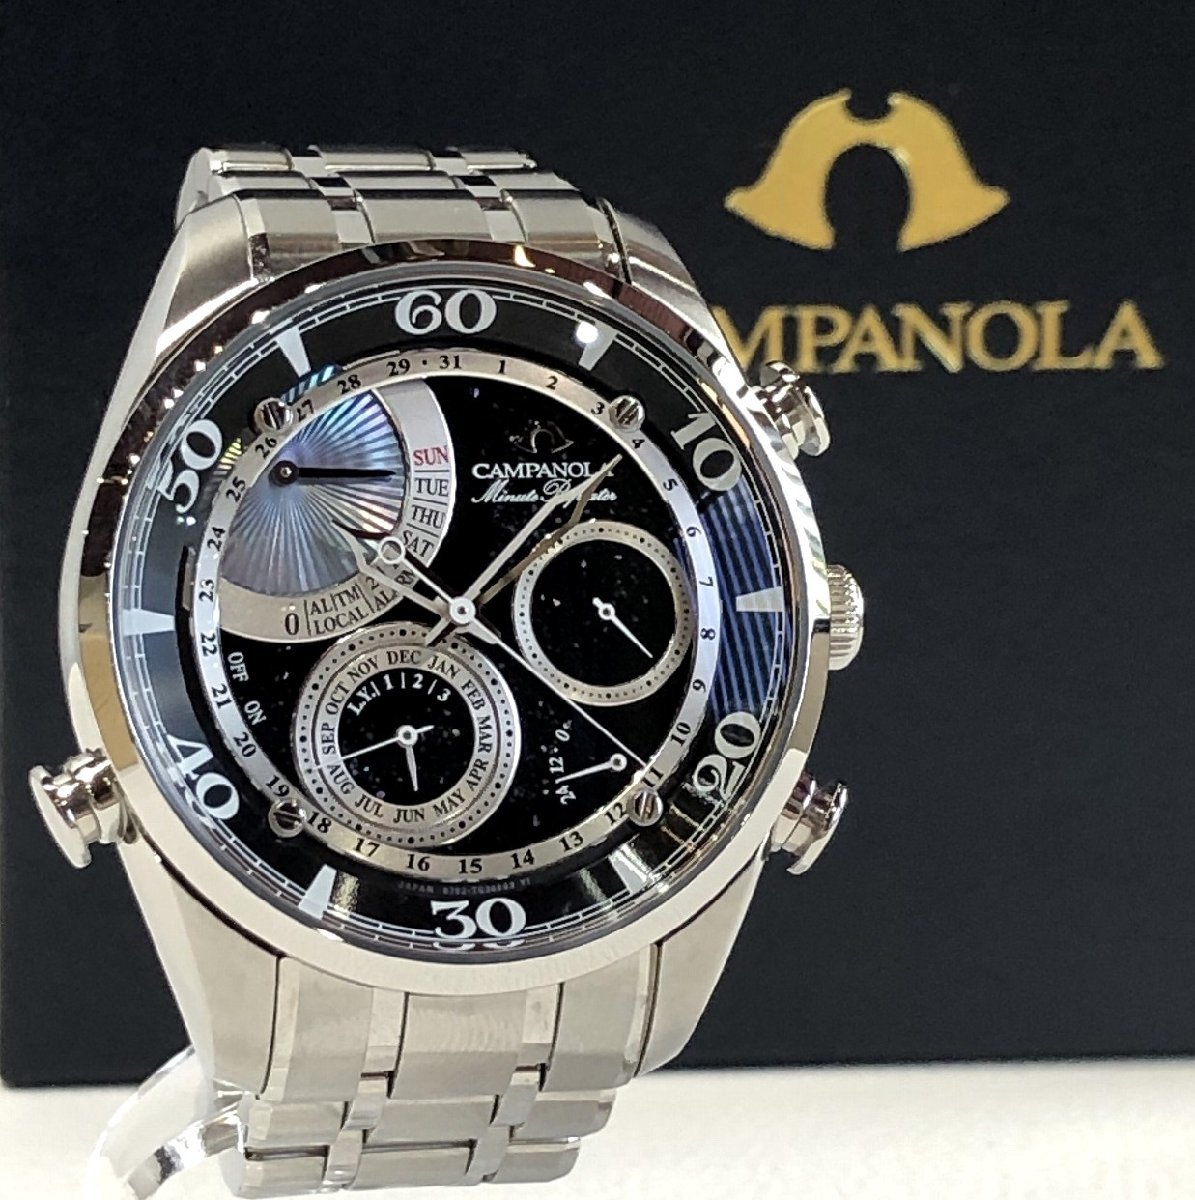 新品同様 定価462,000円 シチズン カンパノラ コンプリケーション ミニッツリピーター 星の雫 クオーツ腕時計 AH7060-53F メンズ 質セブン_画像1